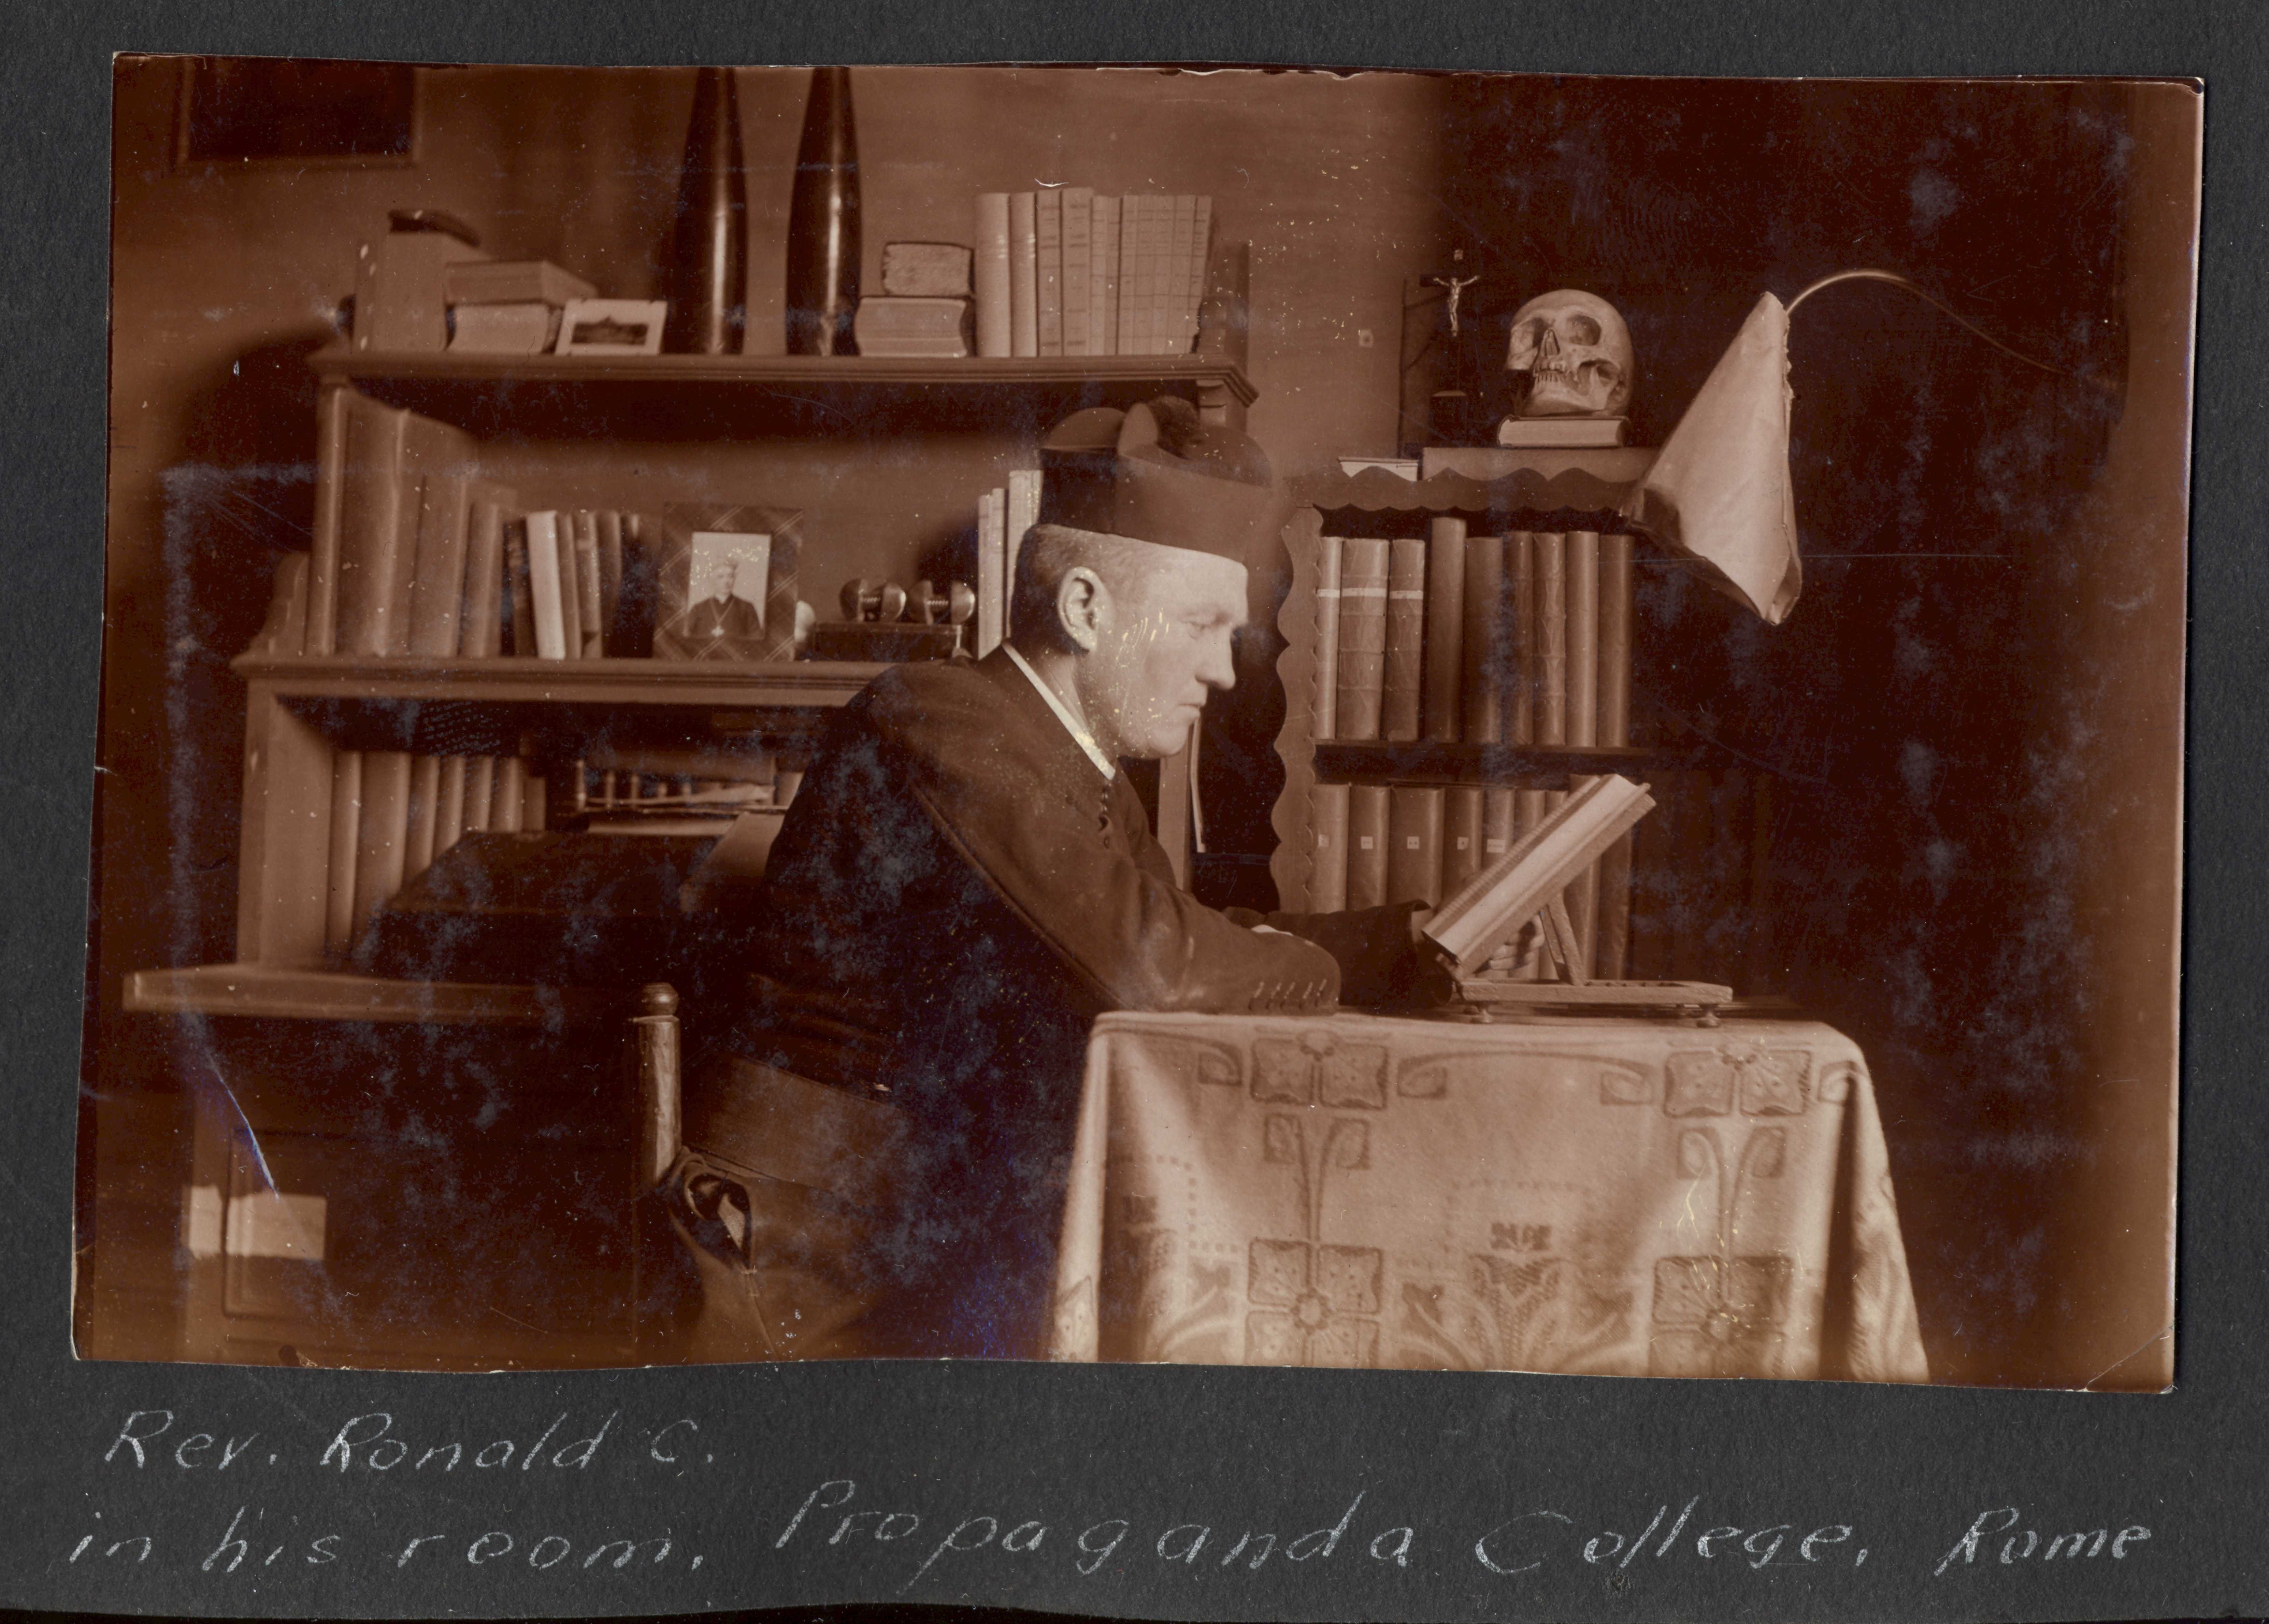 Photographie en noir et blanc – R.C. MacGillivray est montré de profil, en train de lire un livre, assis à une table couverte d’une longue nappe brodée. On aperçoit des étagères de livres derrière lui. Il porte un uniforme et un chapeau de couleur foncée.